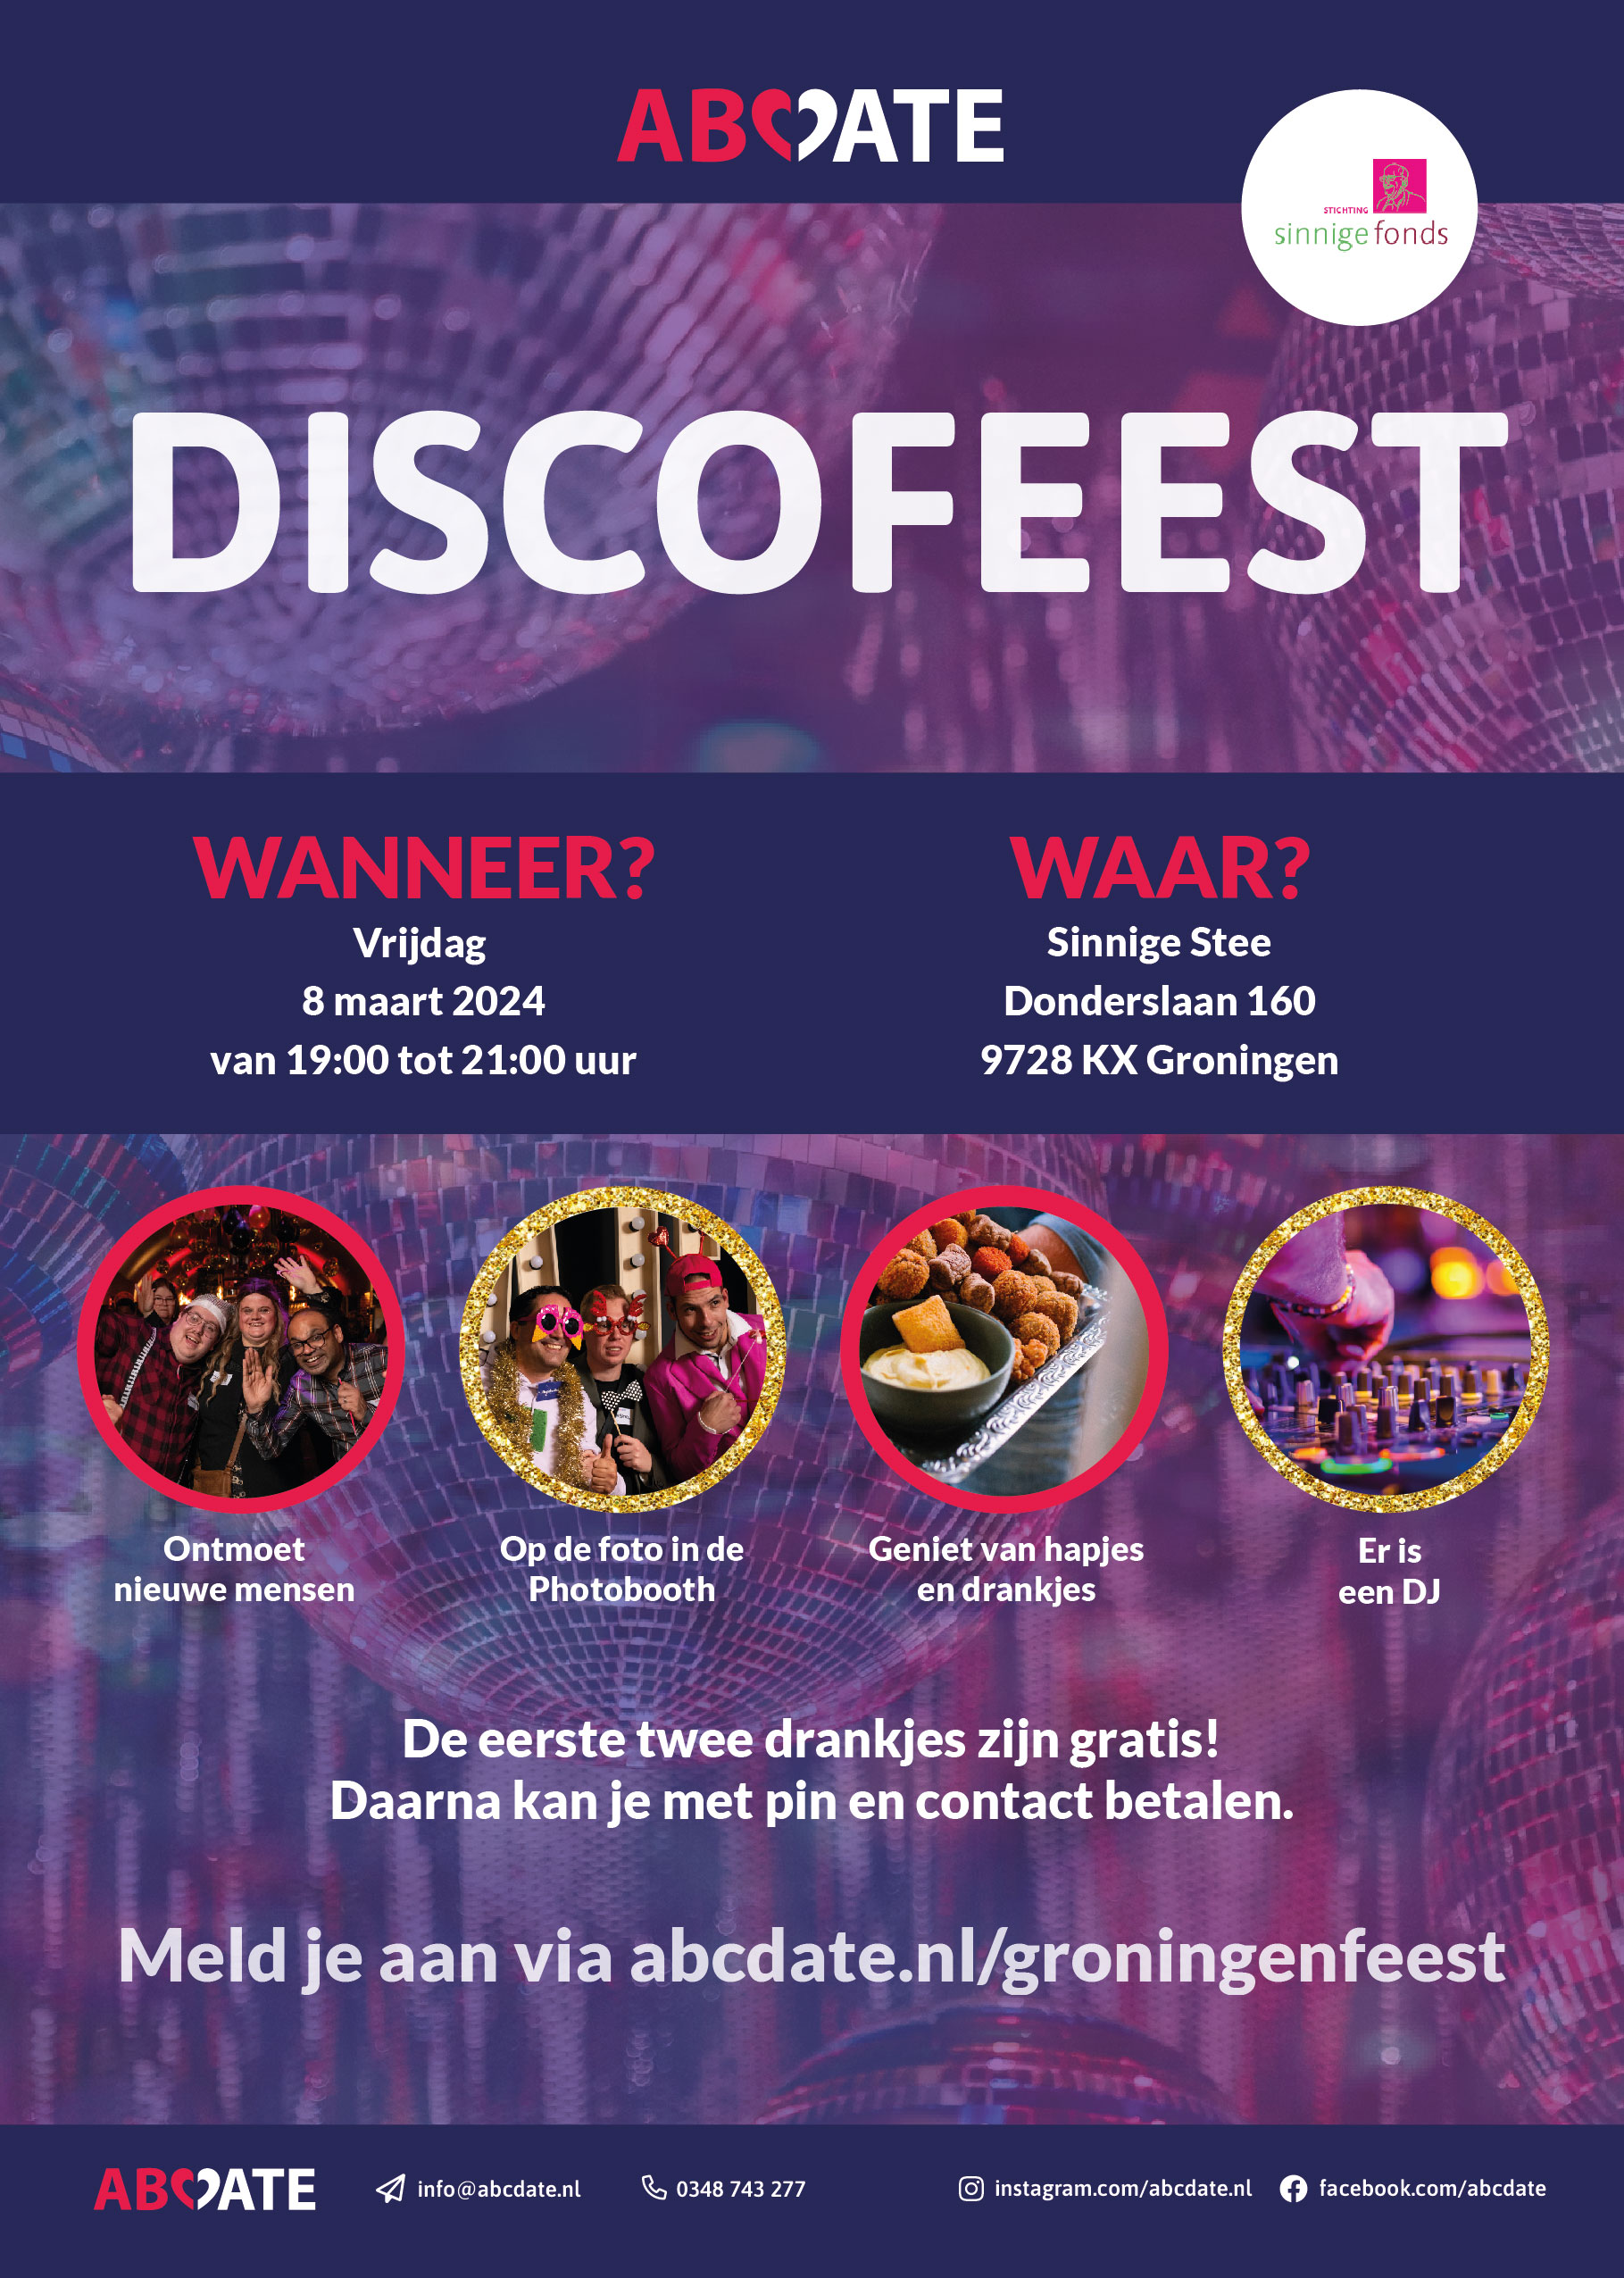 Gratis naar het Discofeest van ABCDate en ABCMaatje in Groningen